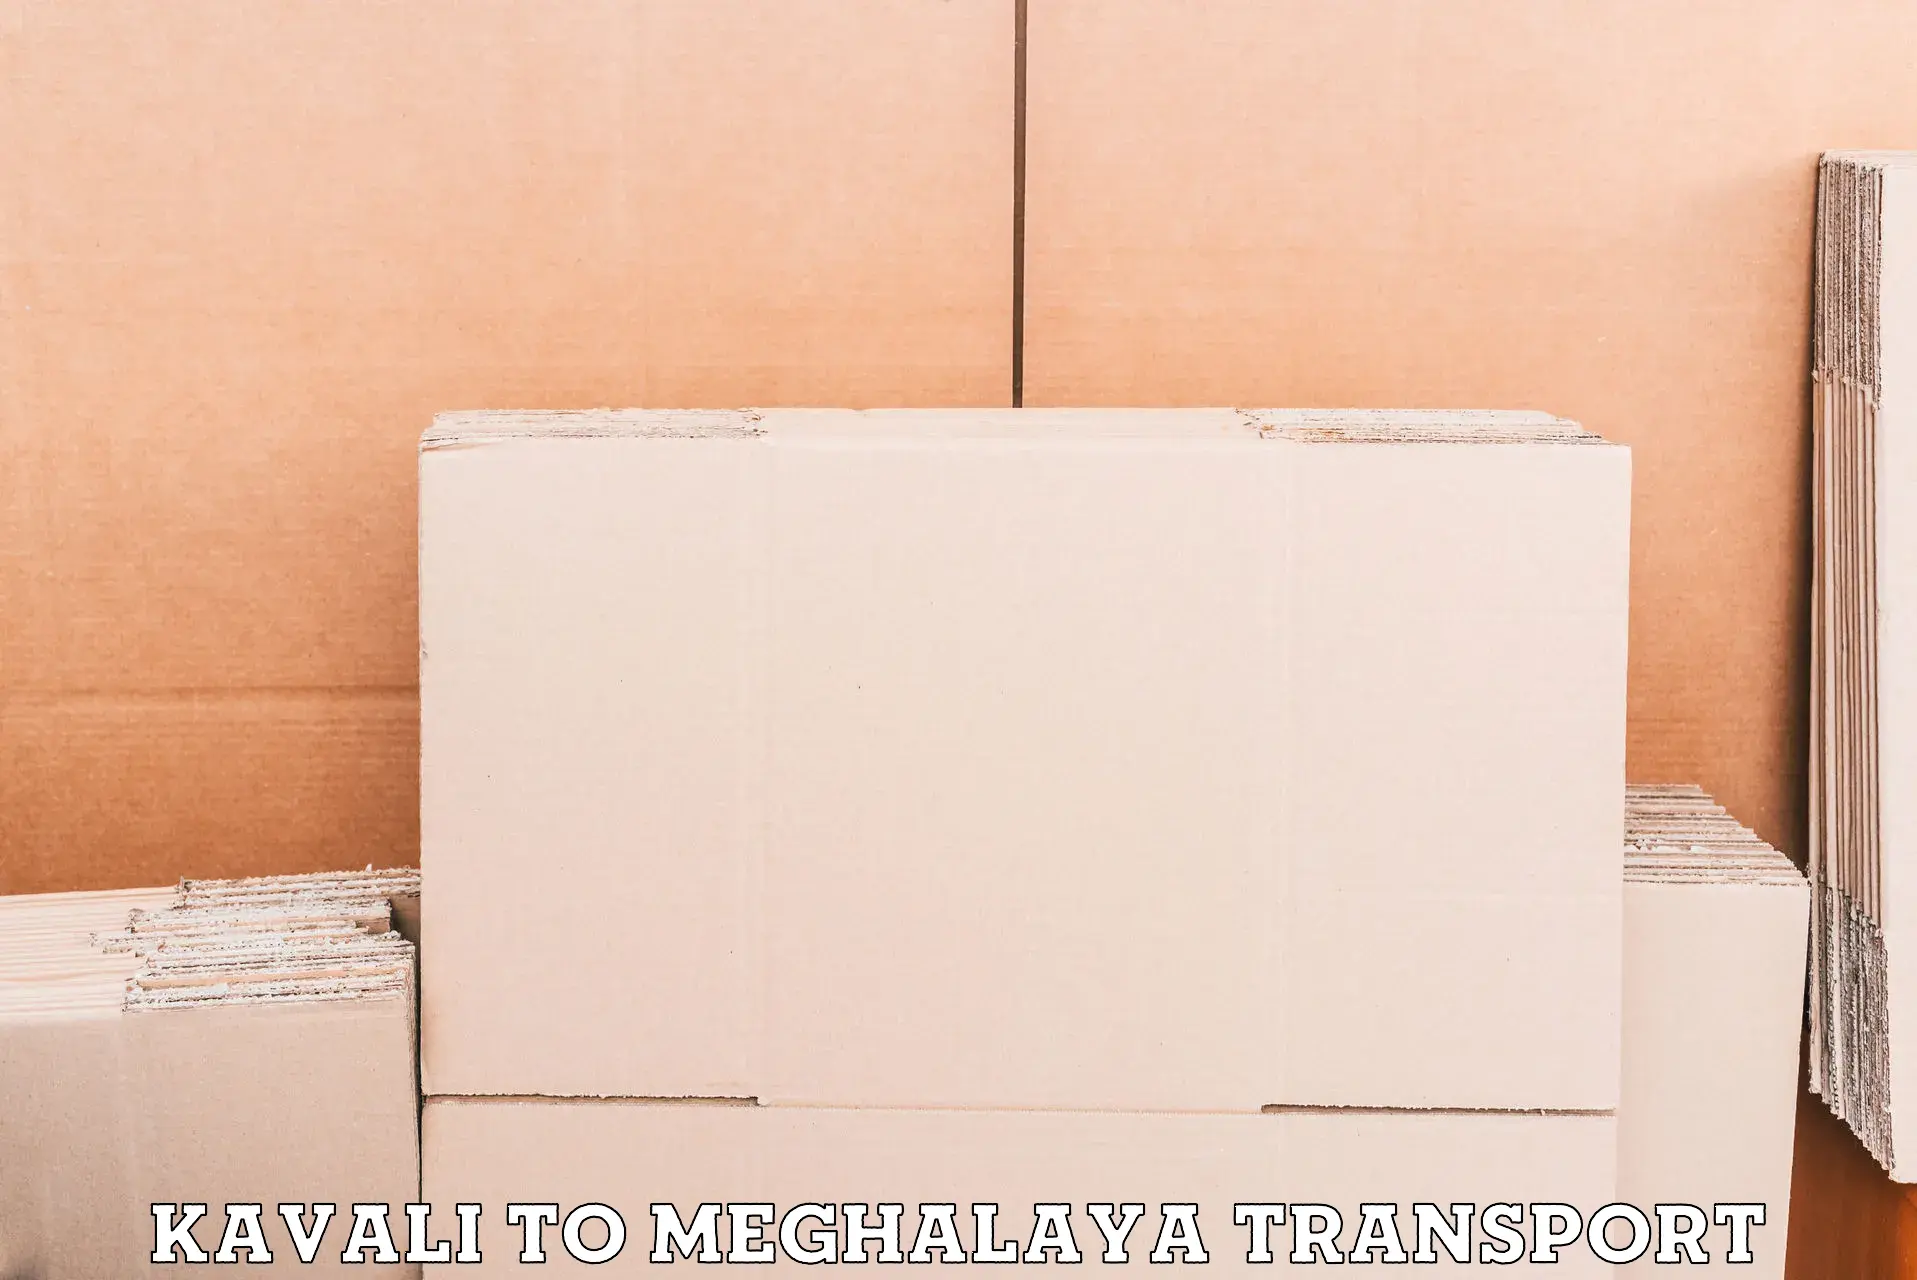 Daily transport service Kavali to Meghalaya